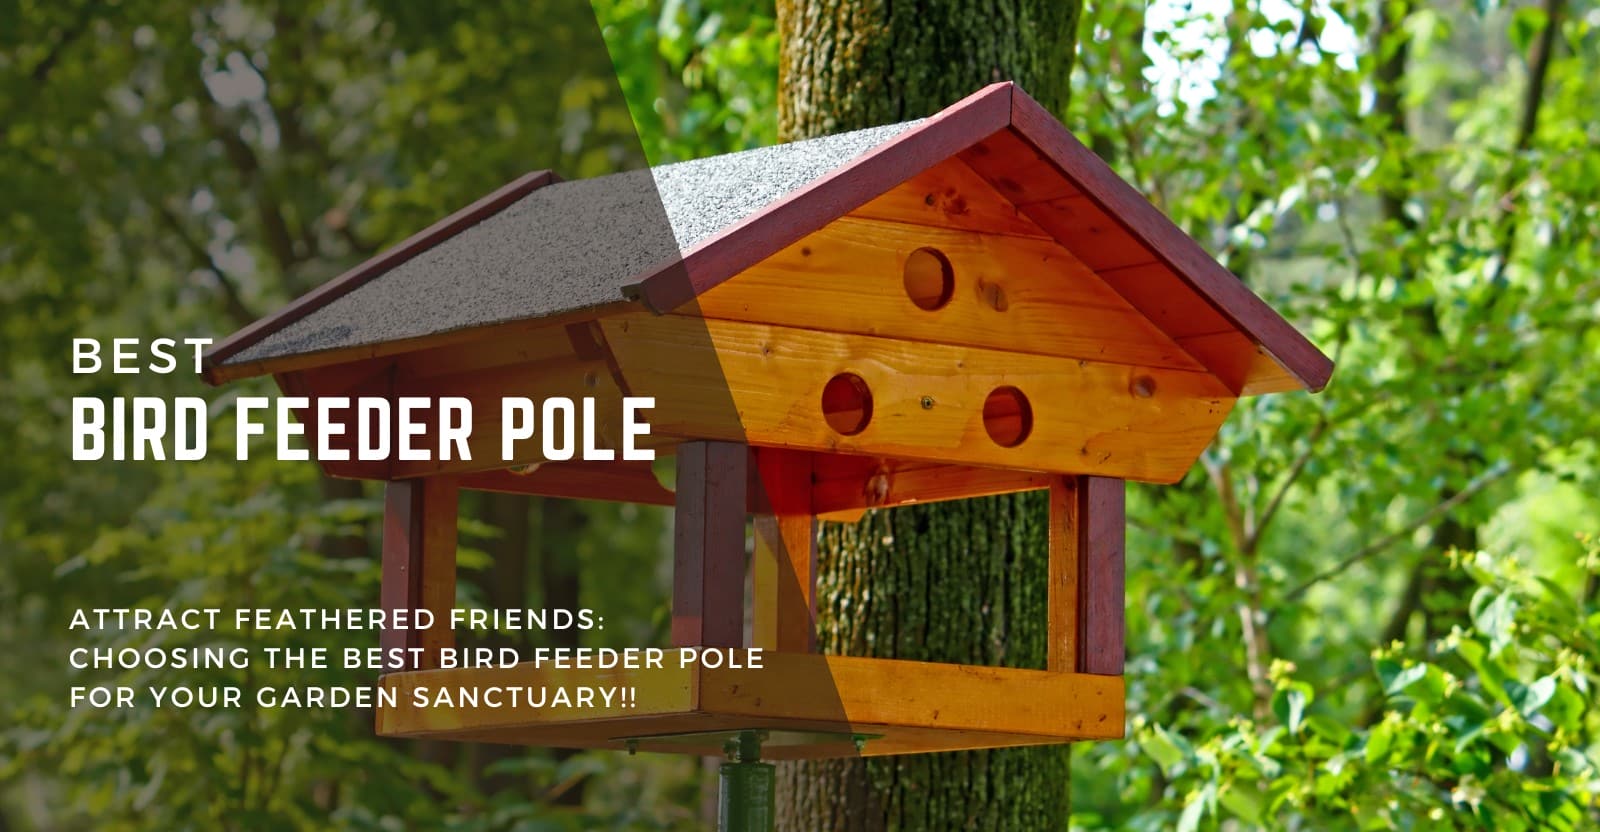 Best Bird Feeder Pole Review